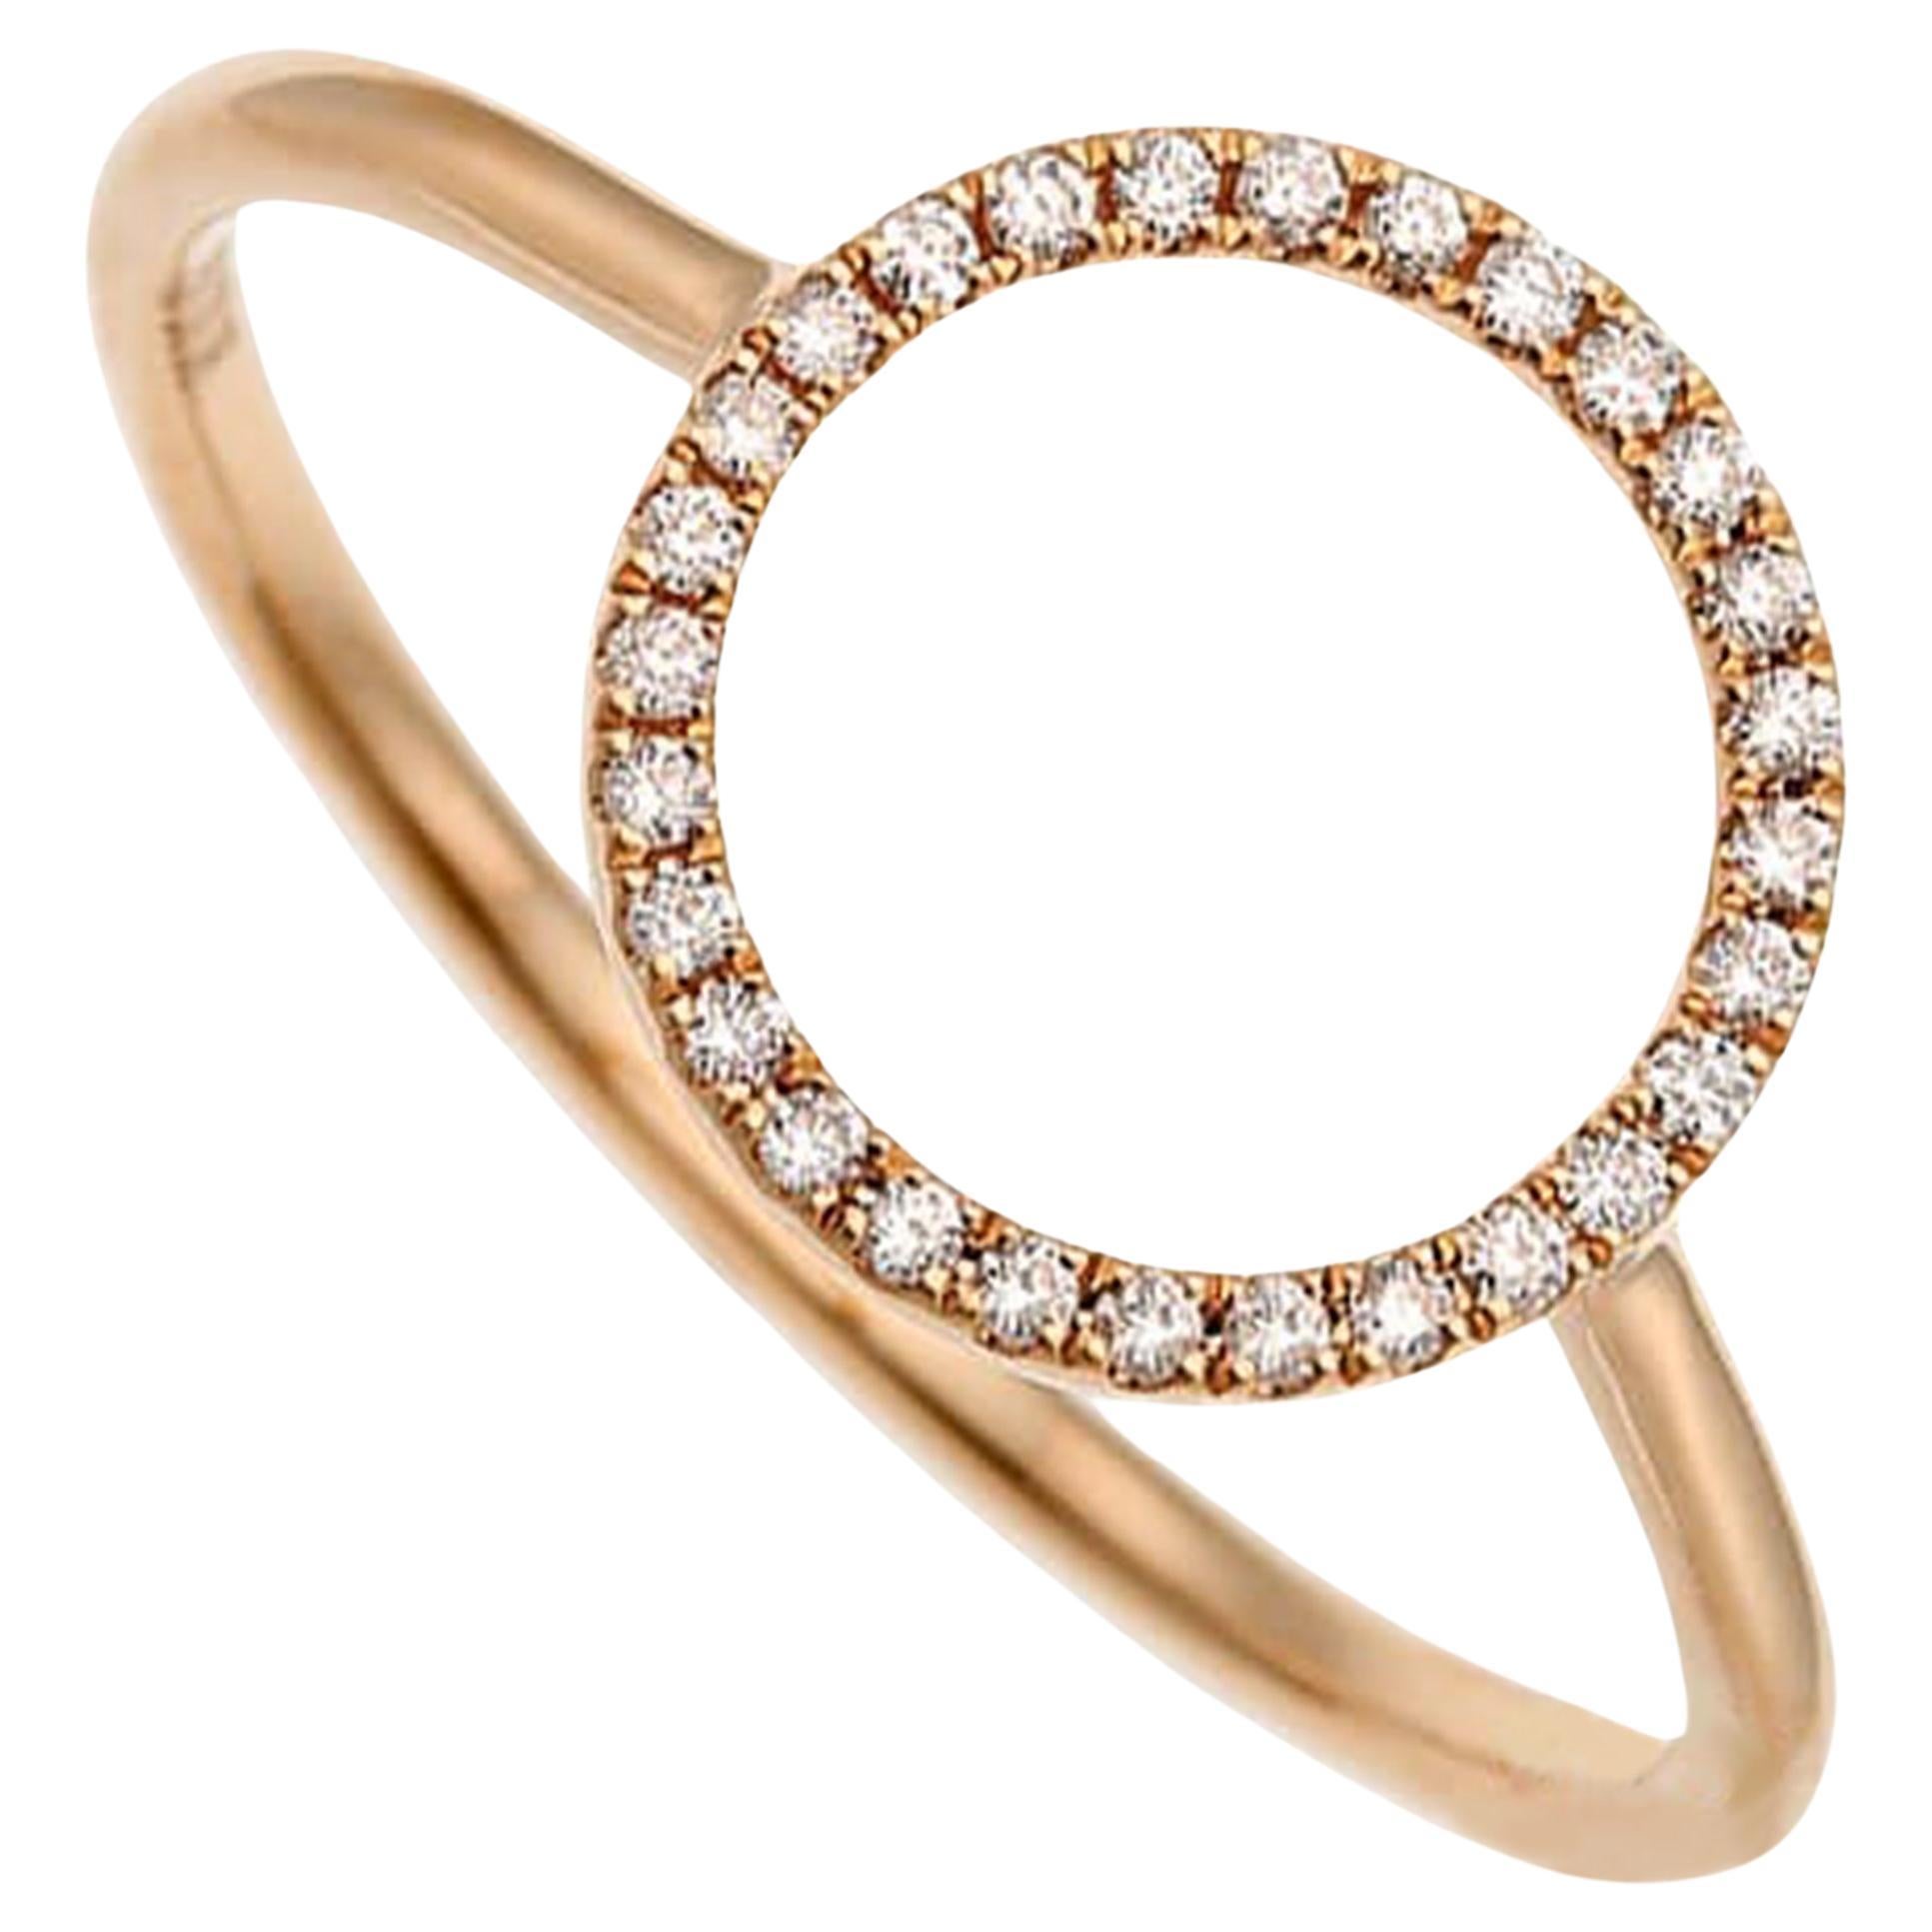 Bague circulaire en or rose 18 carats avec diamants 0,08 carat, taille 6,75